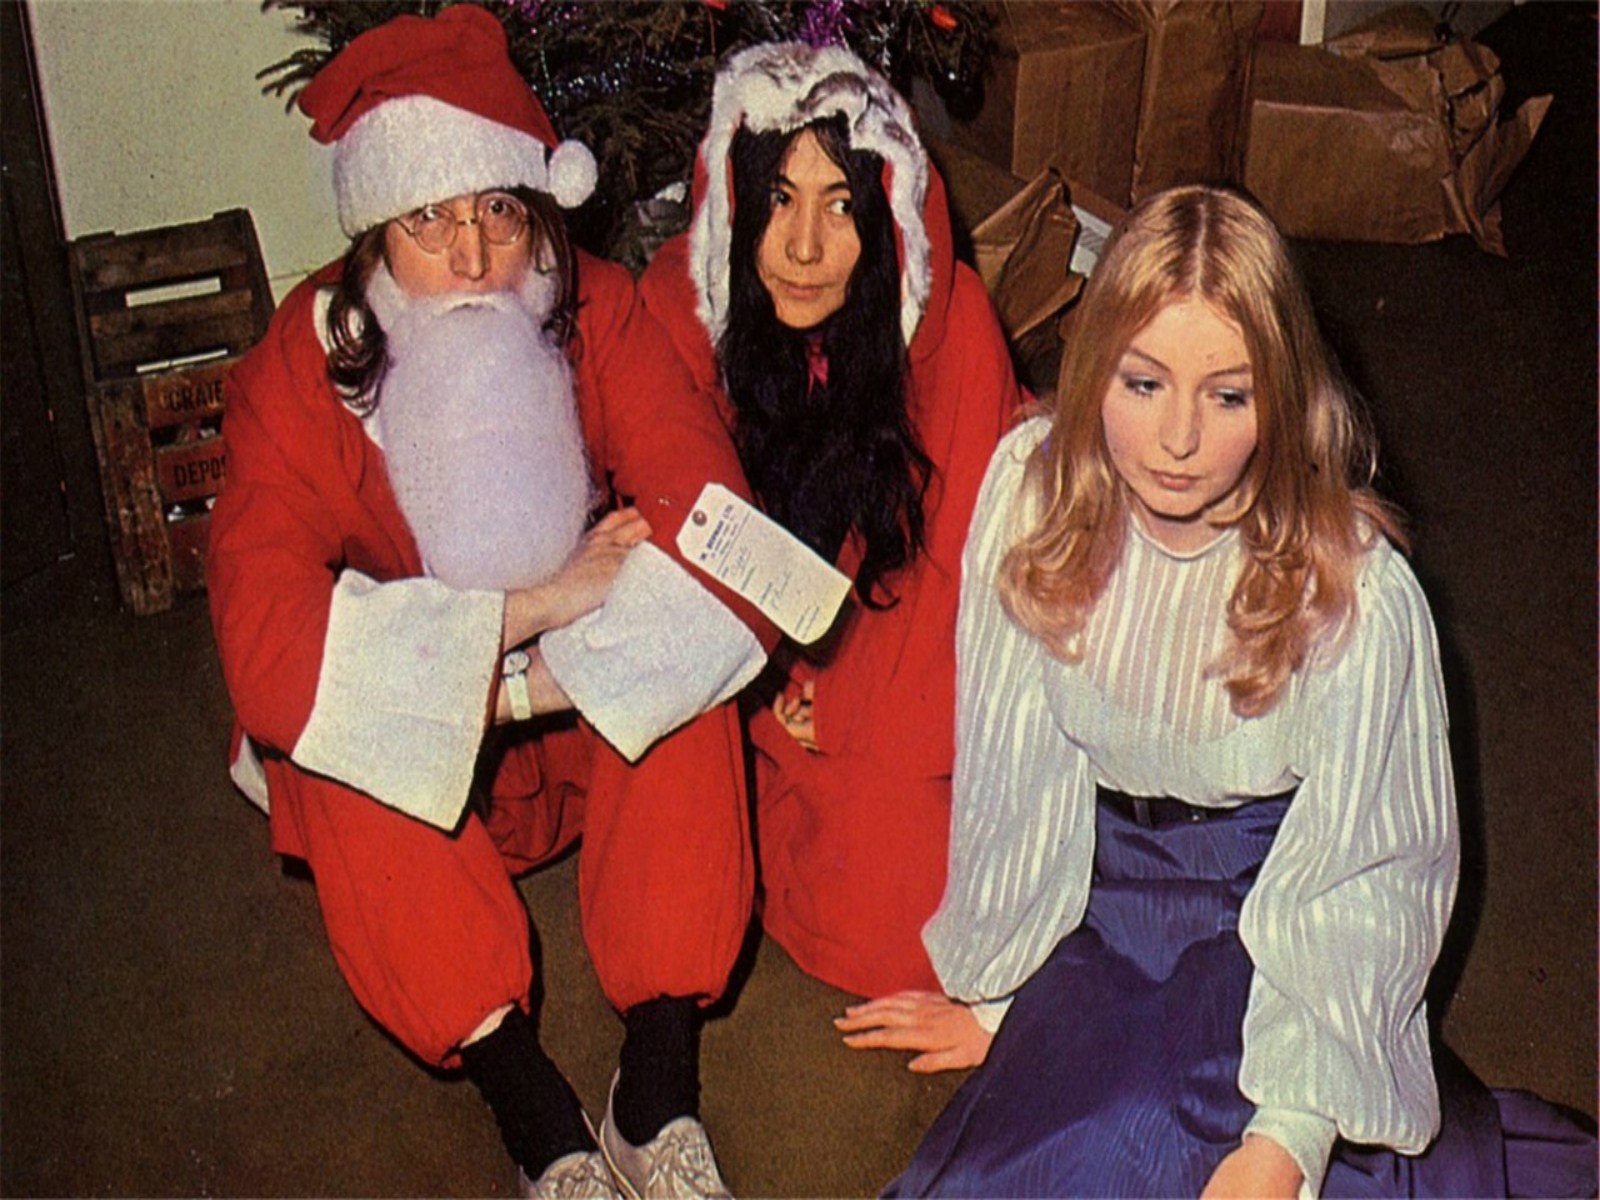 John Lennon Christmas , HD Wallpaper & Backgrounds